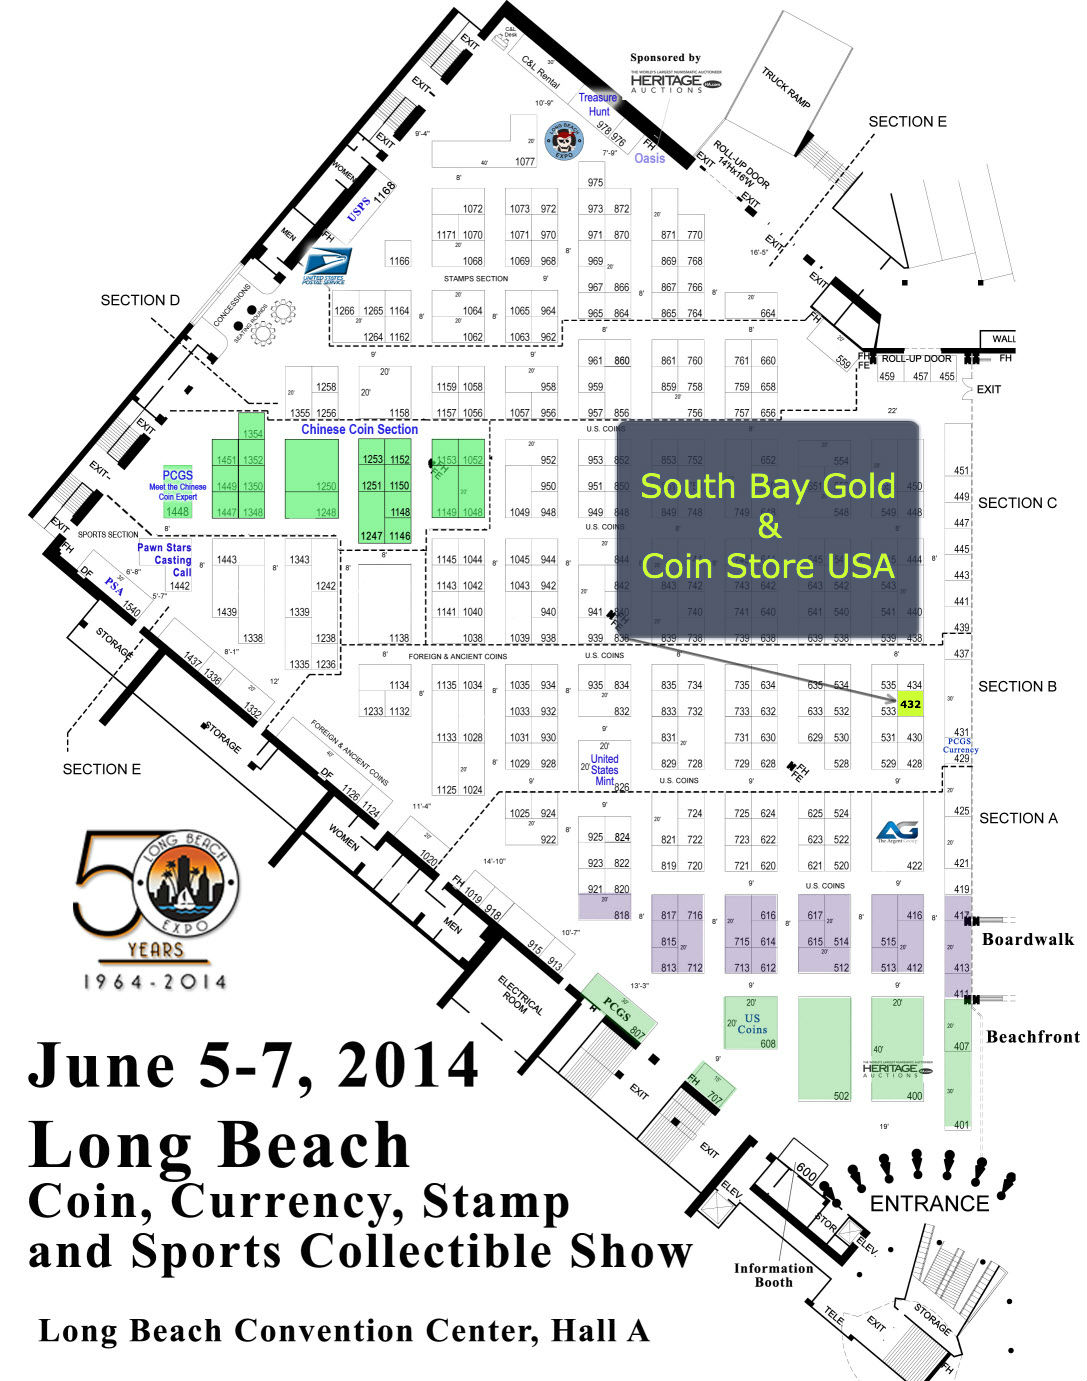 Long Beach Expo Coin Show Map South Bay Gold Coin Store USA